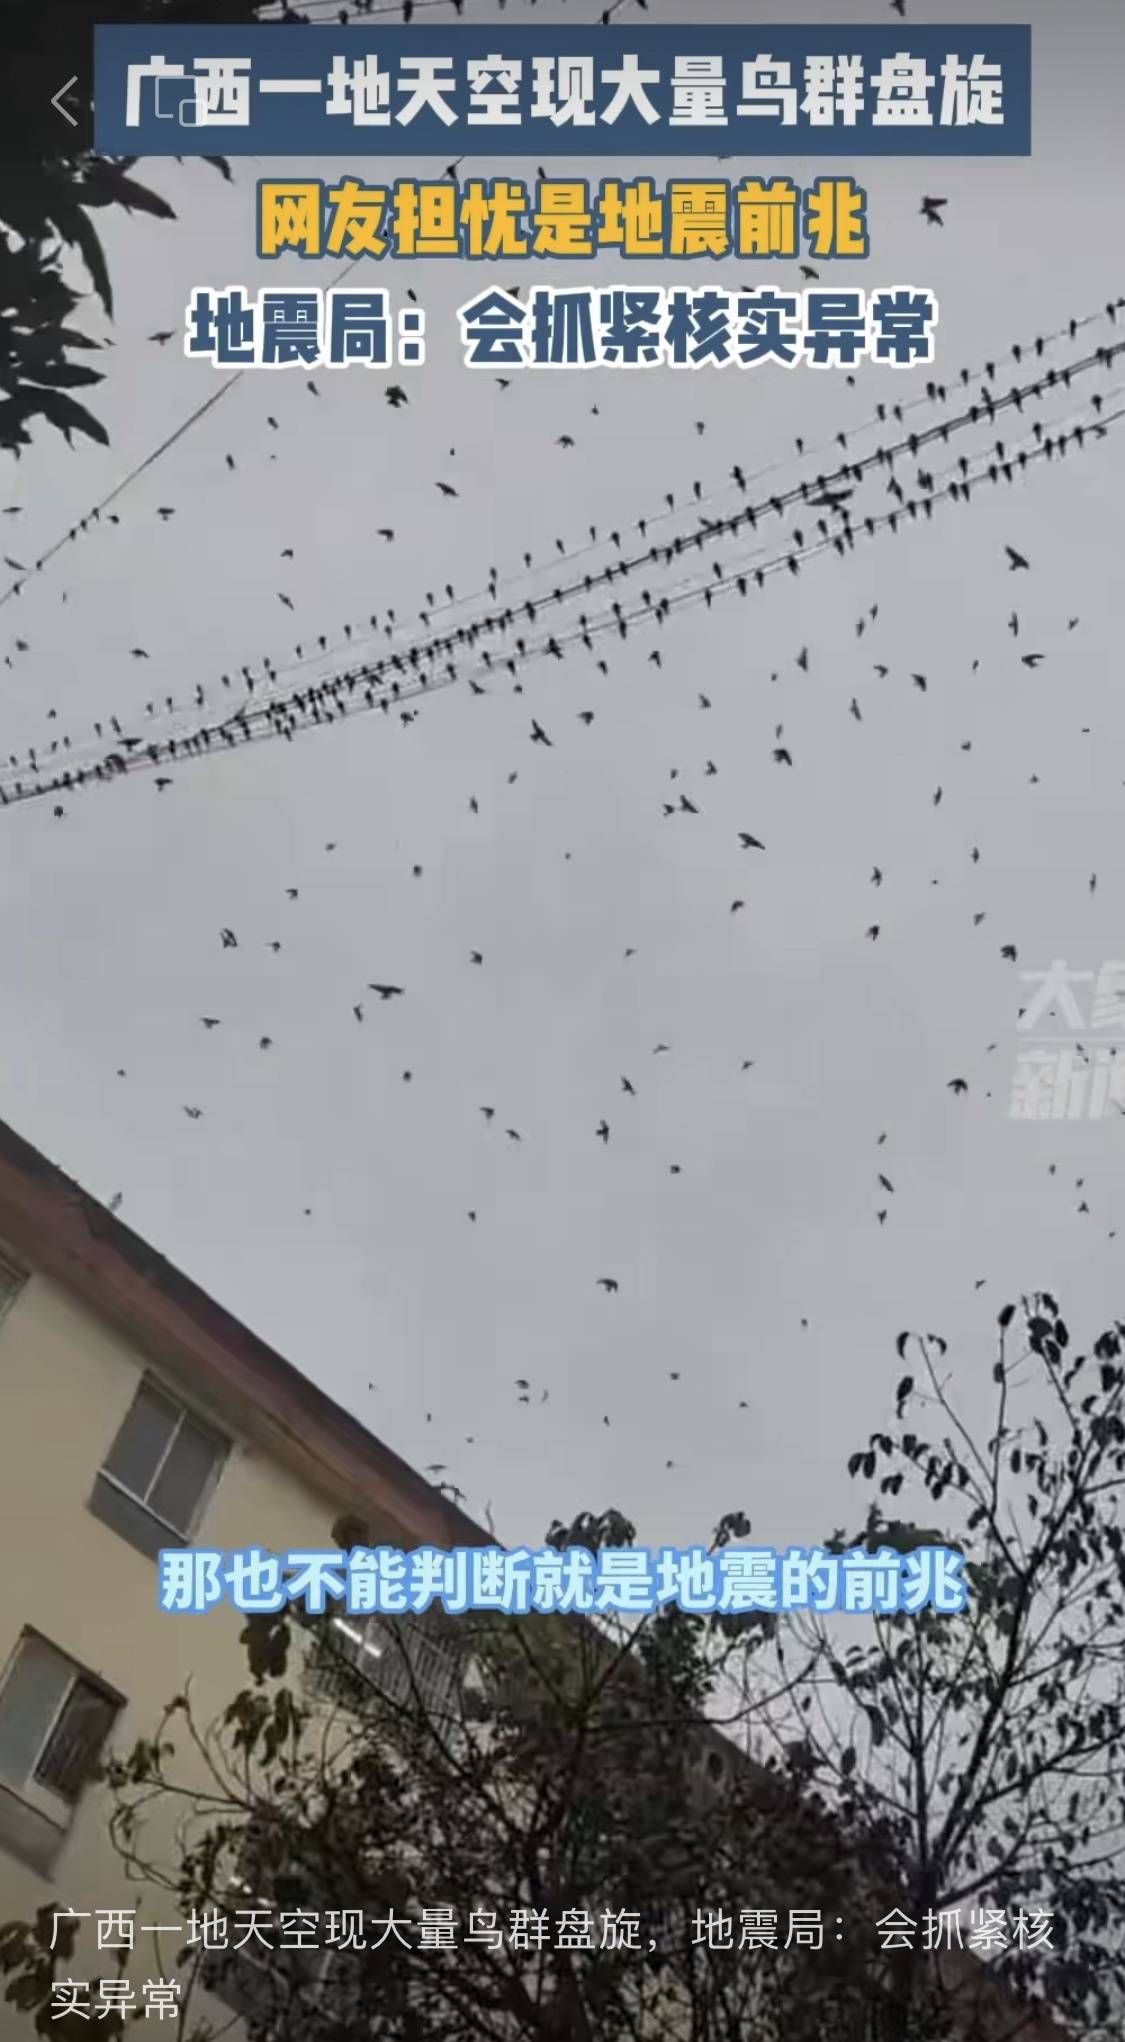 大量鸟类在天空盘踞是地震前兆？地